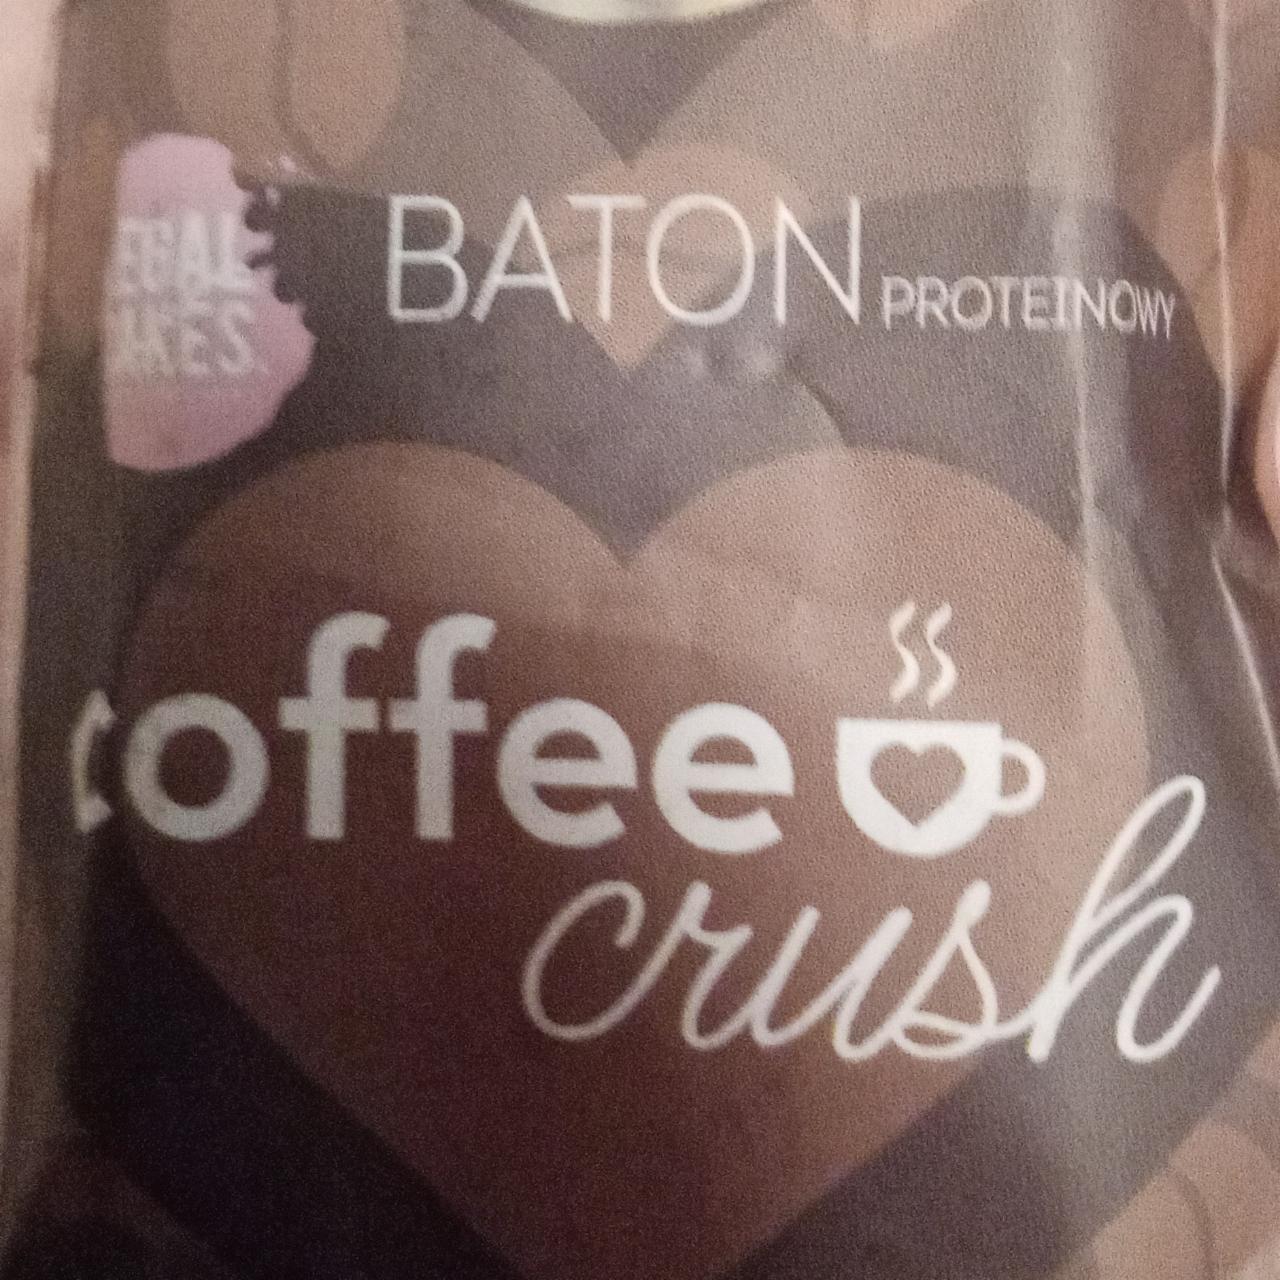 Zdjęcia - Baton proteinowy Coffee Crush Legal Cakes